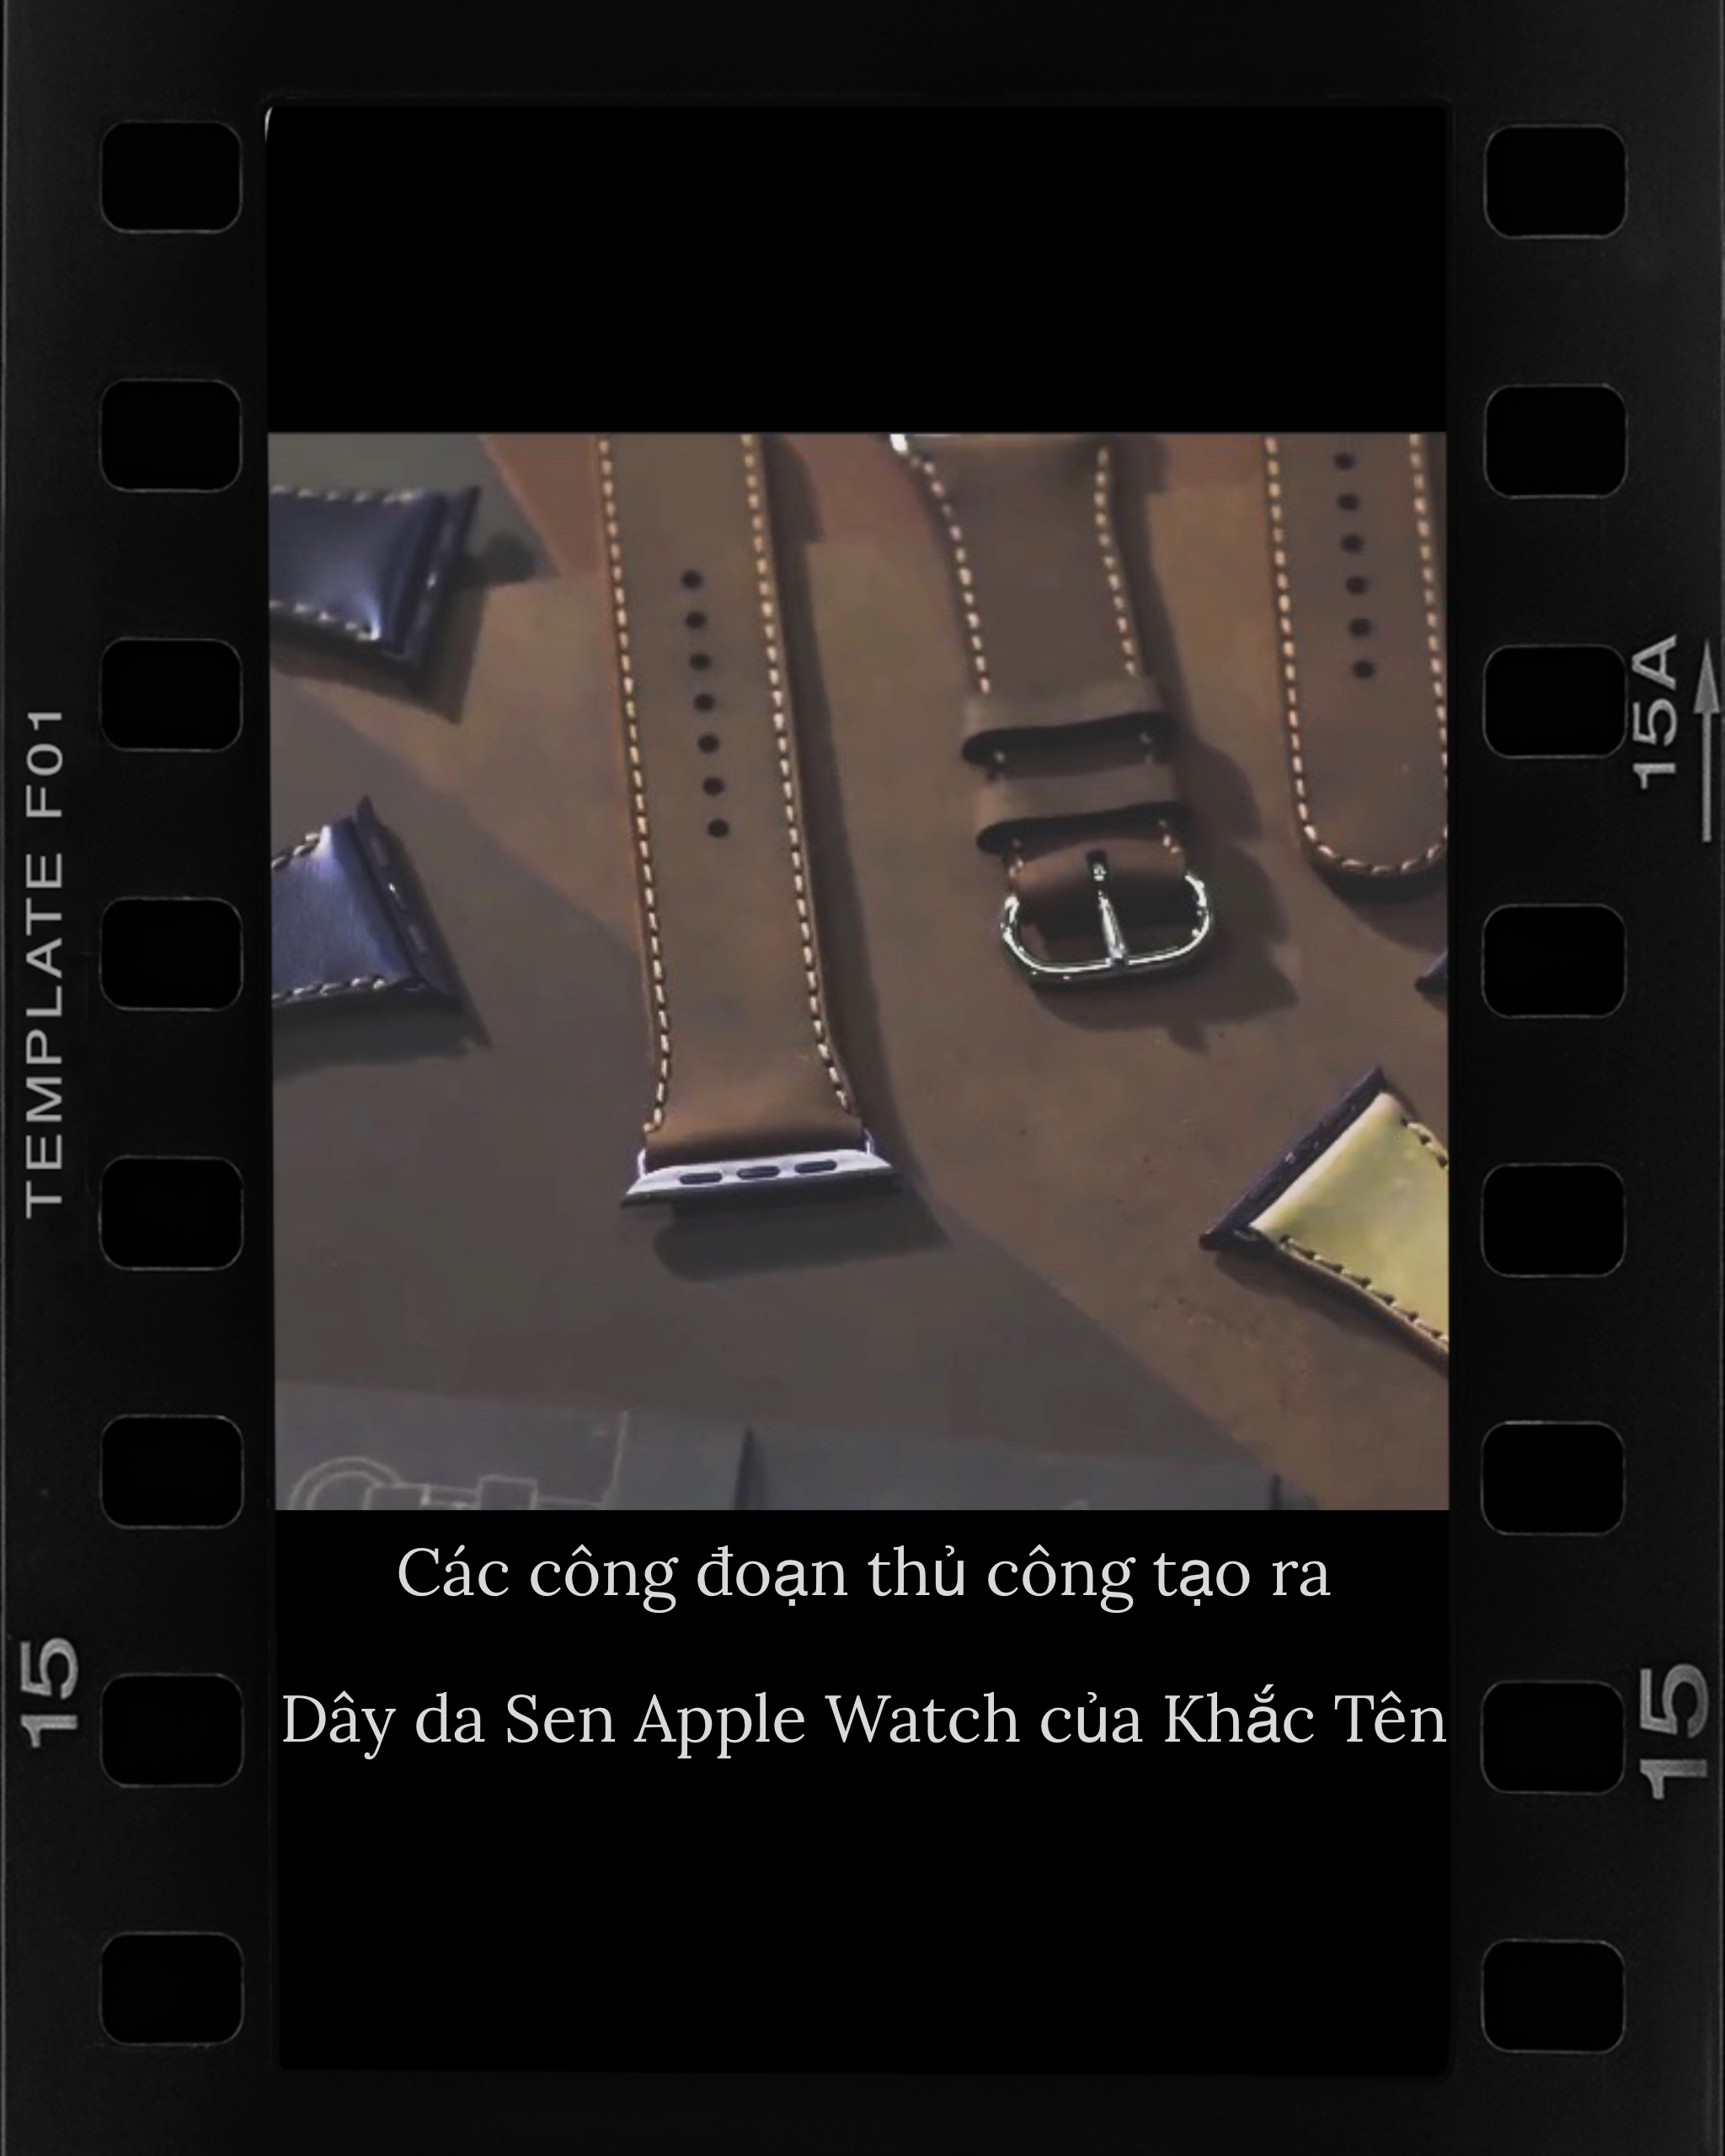 Chia sẻ đến bạn một video quay lại các công đoạn thủ công làm nên dây da Sen Apple Watch.